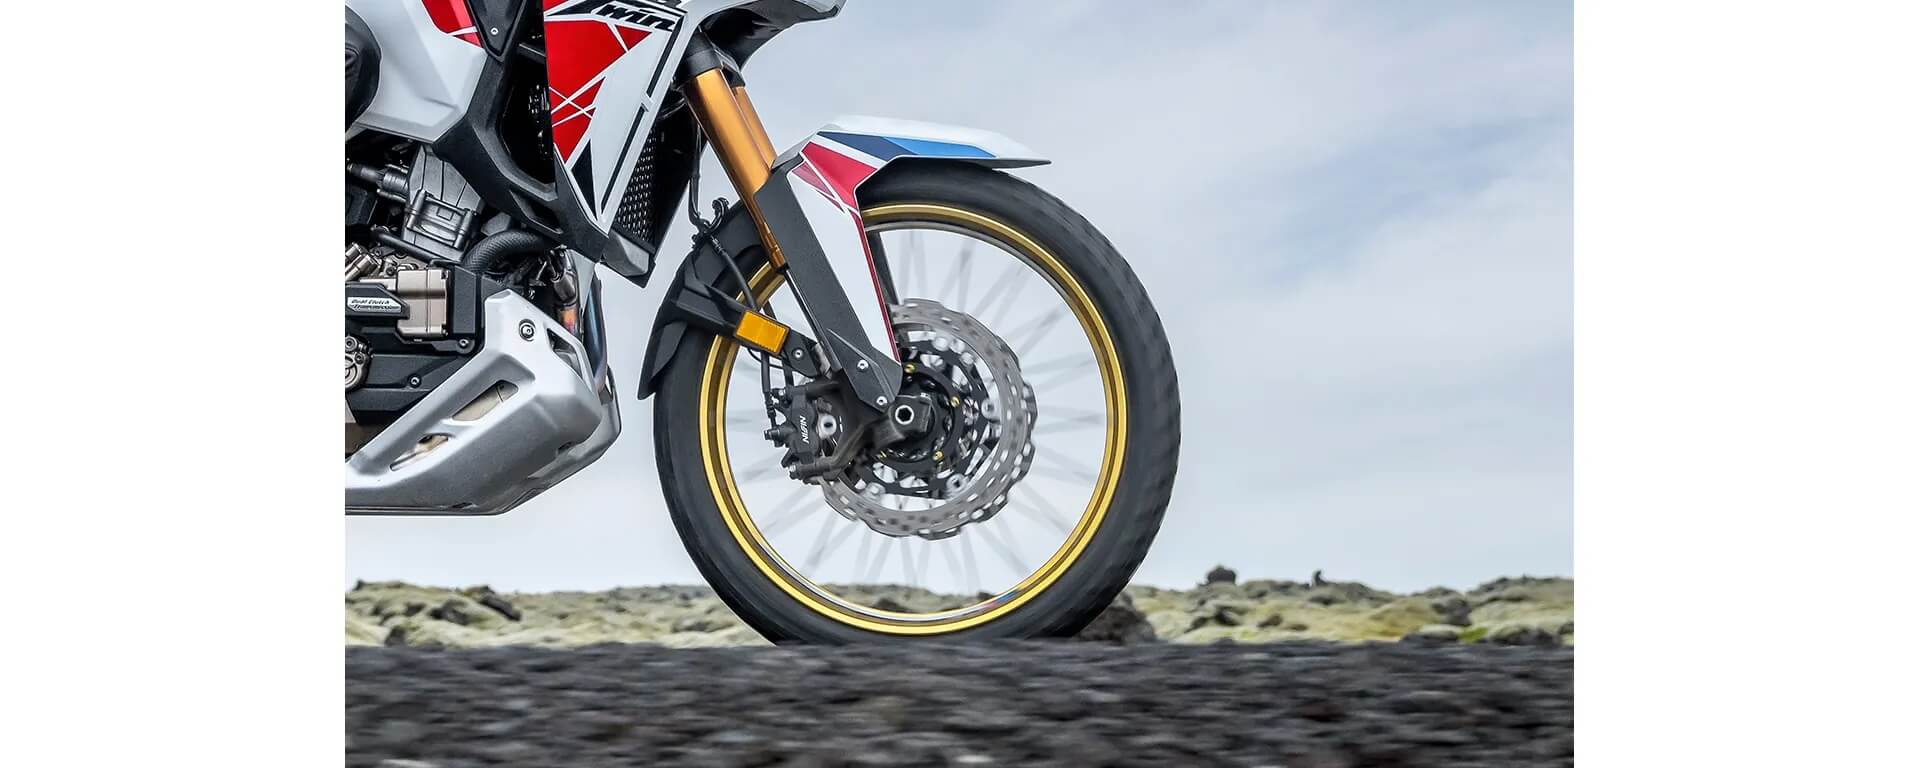 Moto Fest Honda - A CG 160 Titan foi pensada em cada detalhe. A